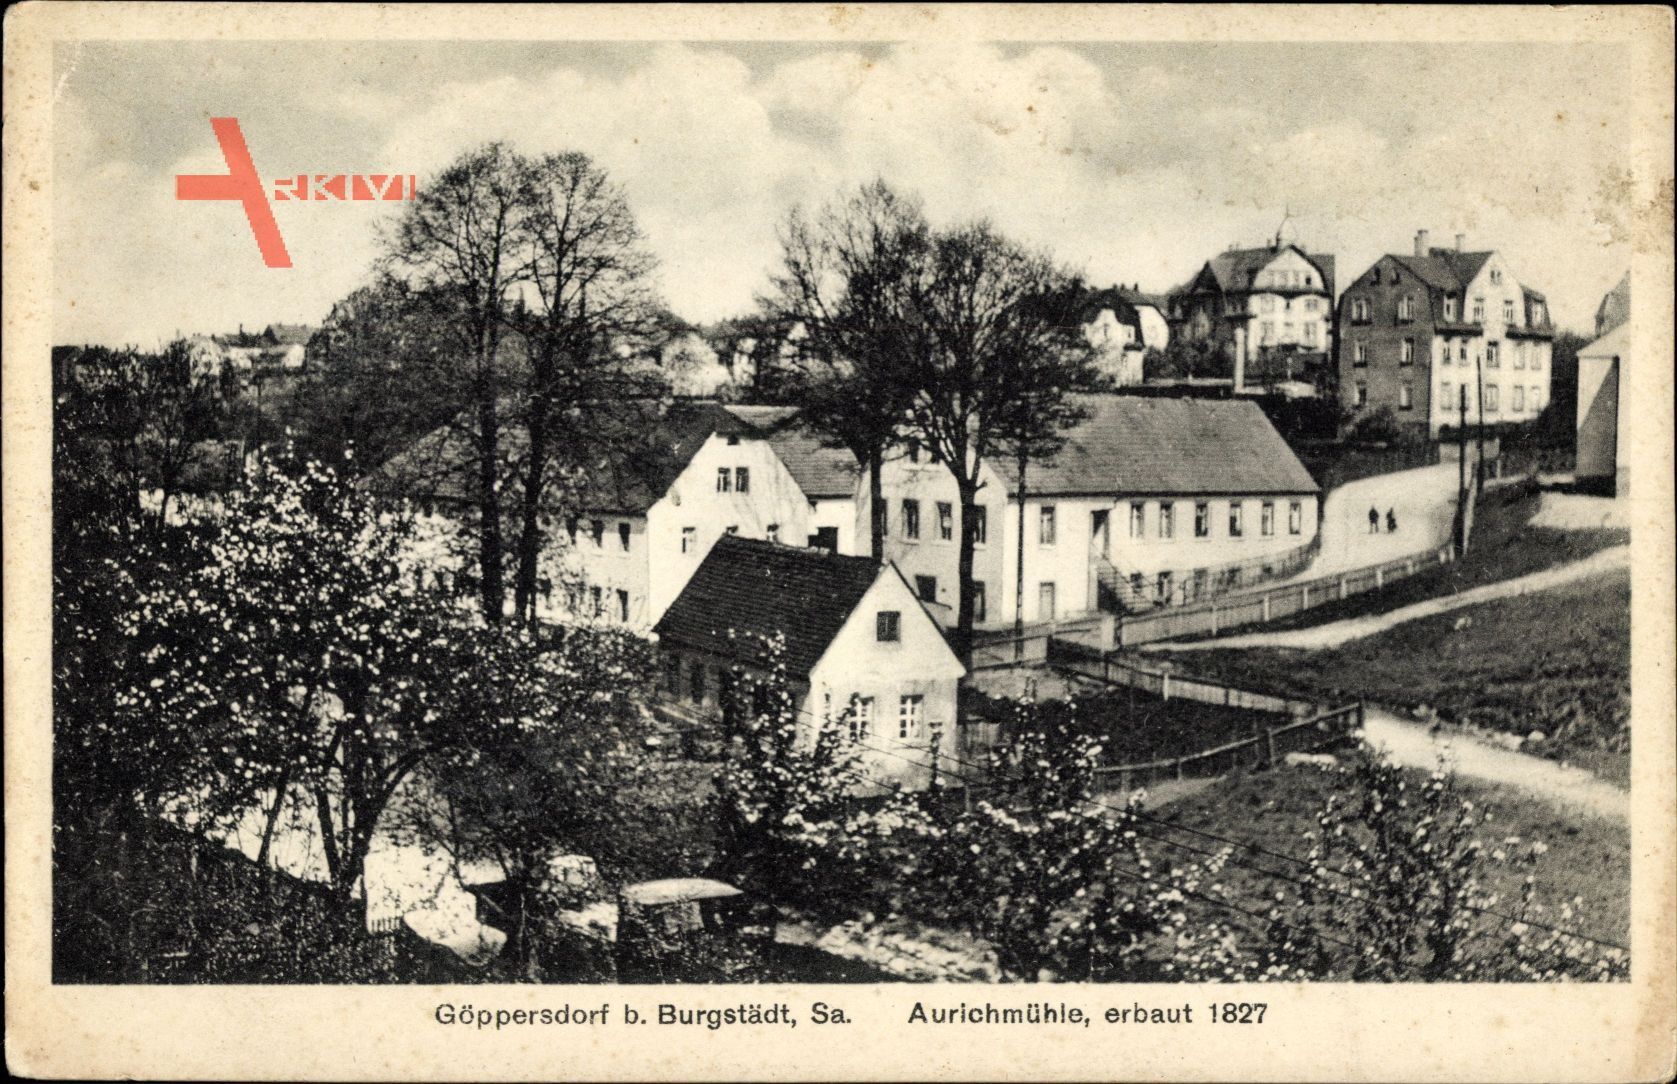 Göppersdorf Burgstädt in Sachsen, Die Aurichmühle, erbaut 1827